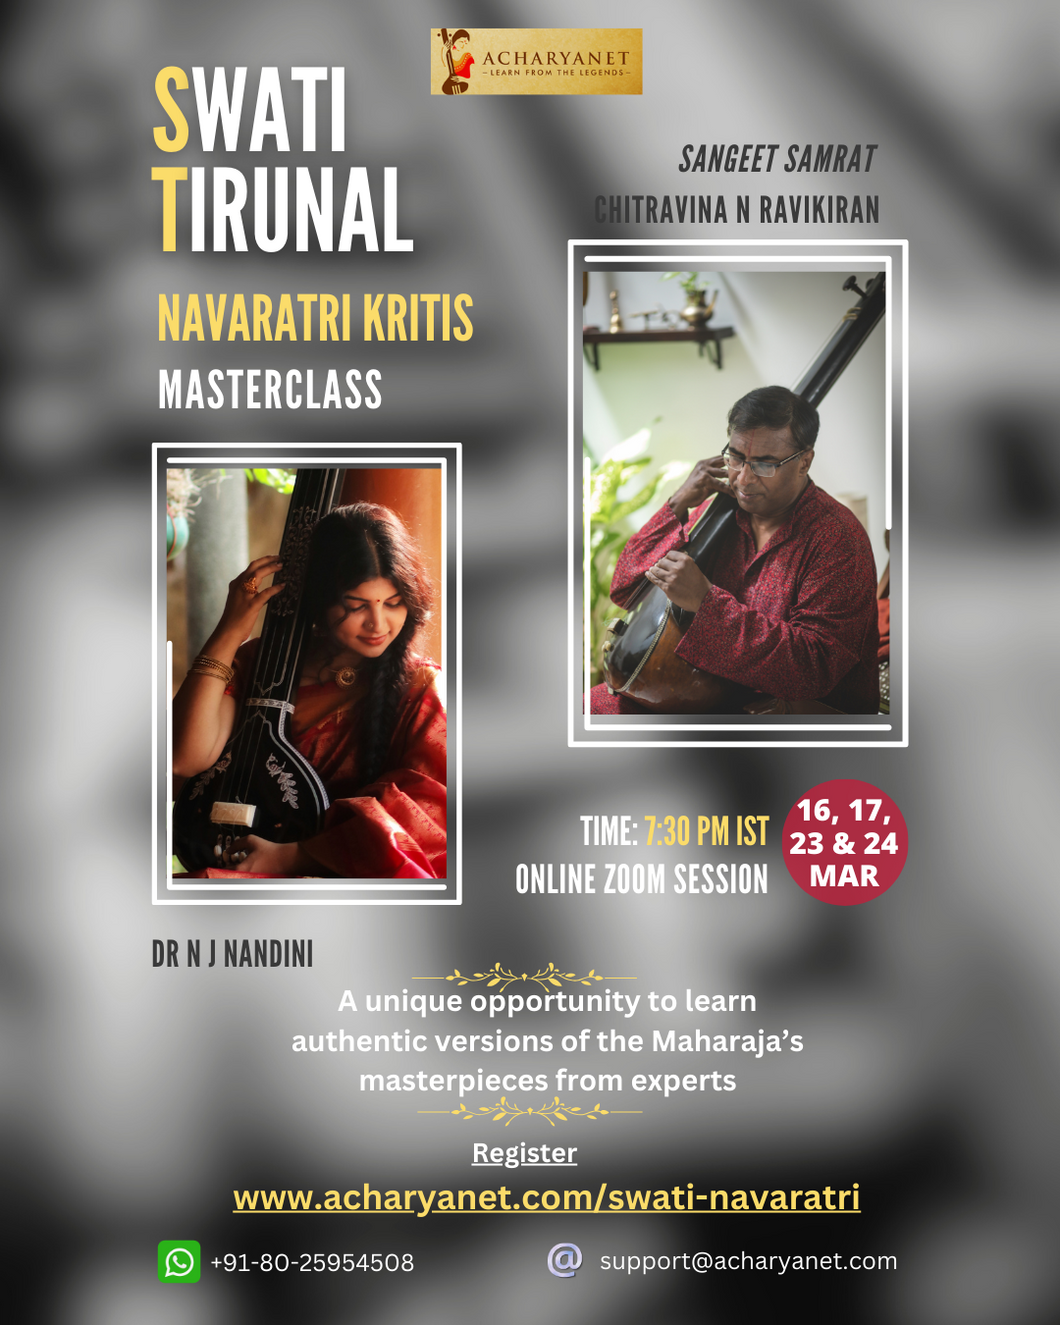 Masterclass on Swati Tirunal Navaratri Krtis by Sangeet Samrat Chitravina N Ravikiran and Dr. N J Nandini